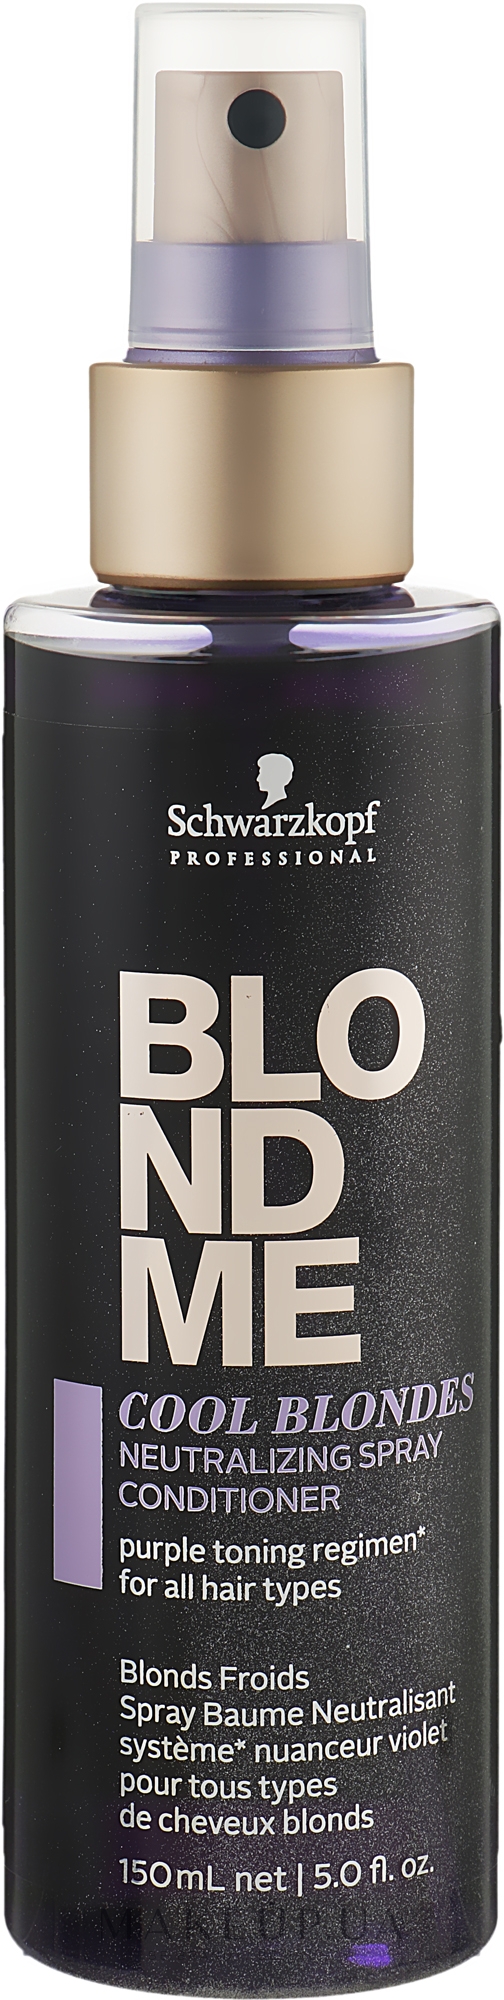 Нейтралізувальний спрей-кондиціонер для волосся холодних відтінків - Schwarzkopf Professional Blondme Cool Blondes Neutralizing Spray Conditioner — фото 150ml